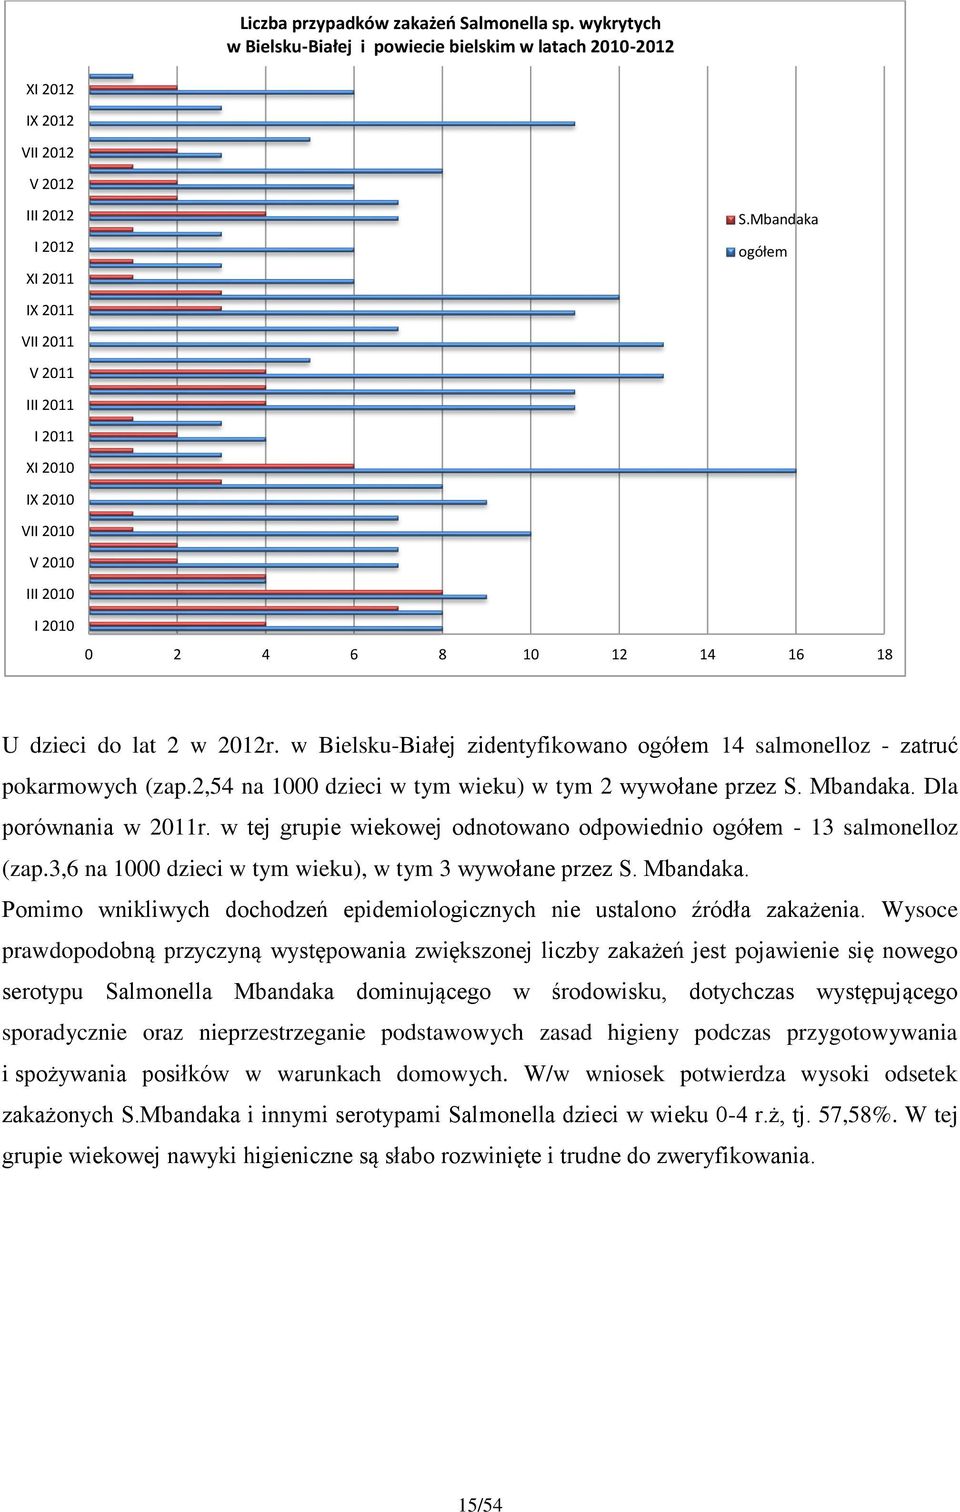 2010 I 2010 S.Mbandaka ogółem 0 2 4 6 8 10 12 14 16 18 U dzieci do lat 2 w 2012r. w Bielsku-Białej zidentyfikowano ogółem 14 salmonelloz - zatruć pokarmowych (zap.